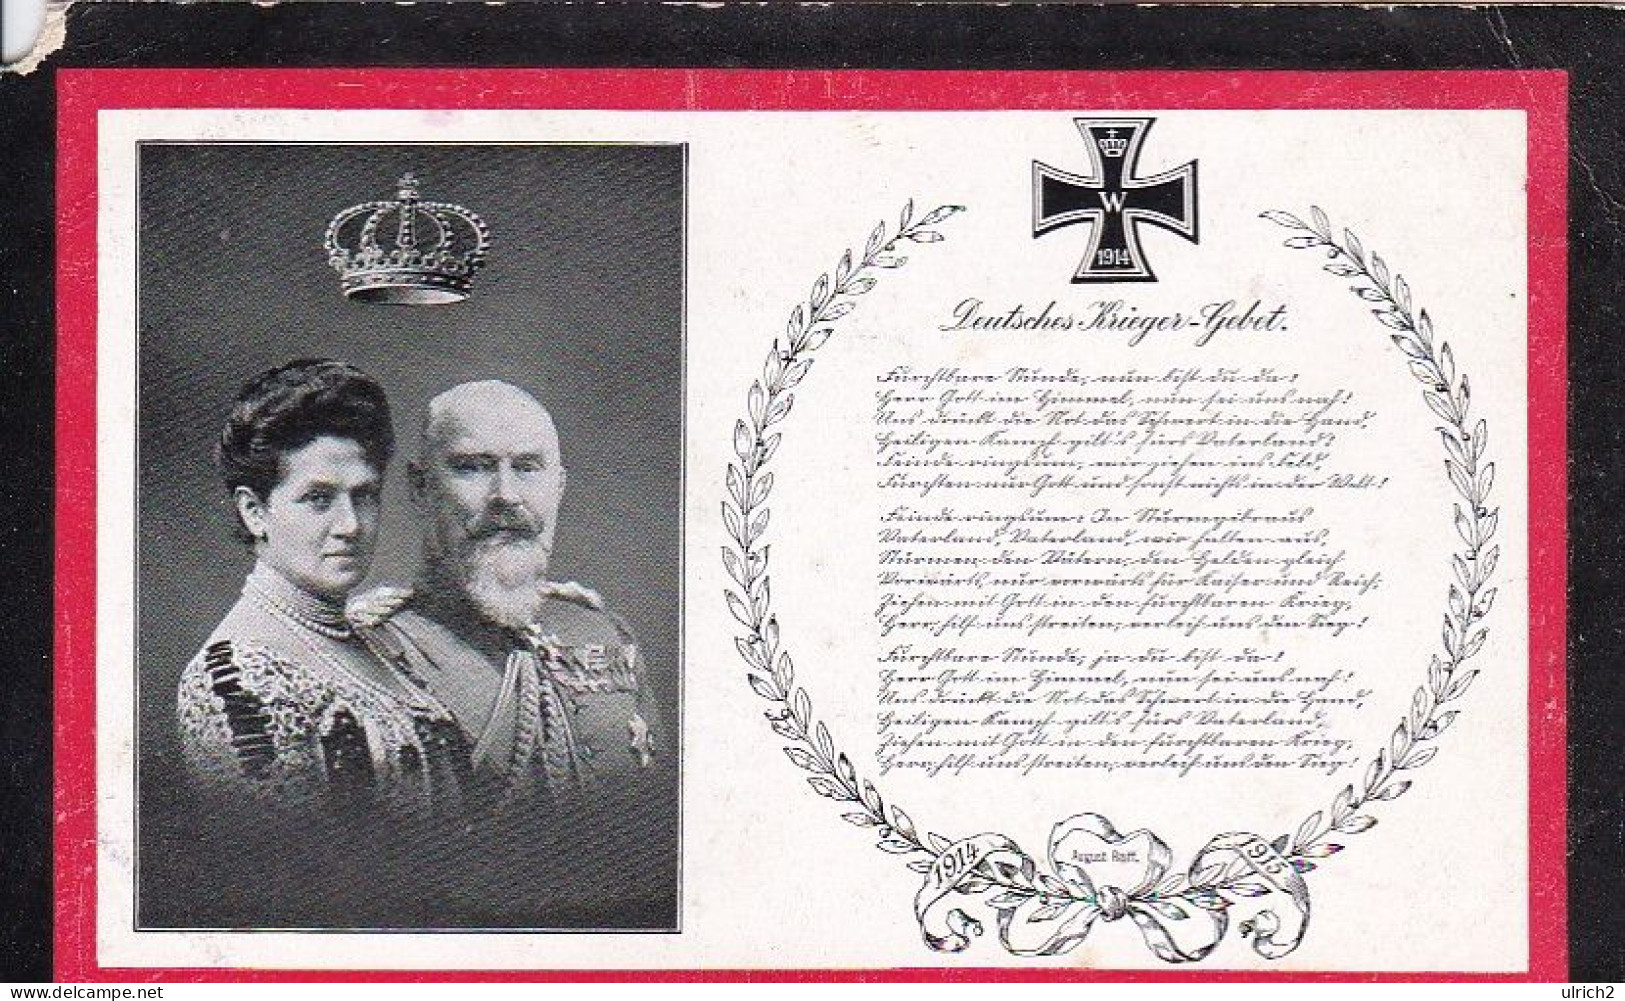 AK König Wilhelm II Von Württemberg Und Charlotte - Deutsches Krieger-Gebet - Ca. 1915 (69414) - Familles Royales